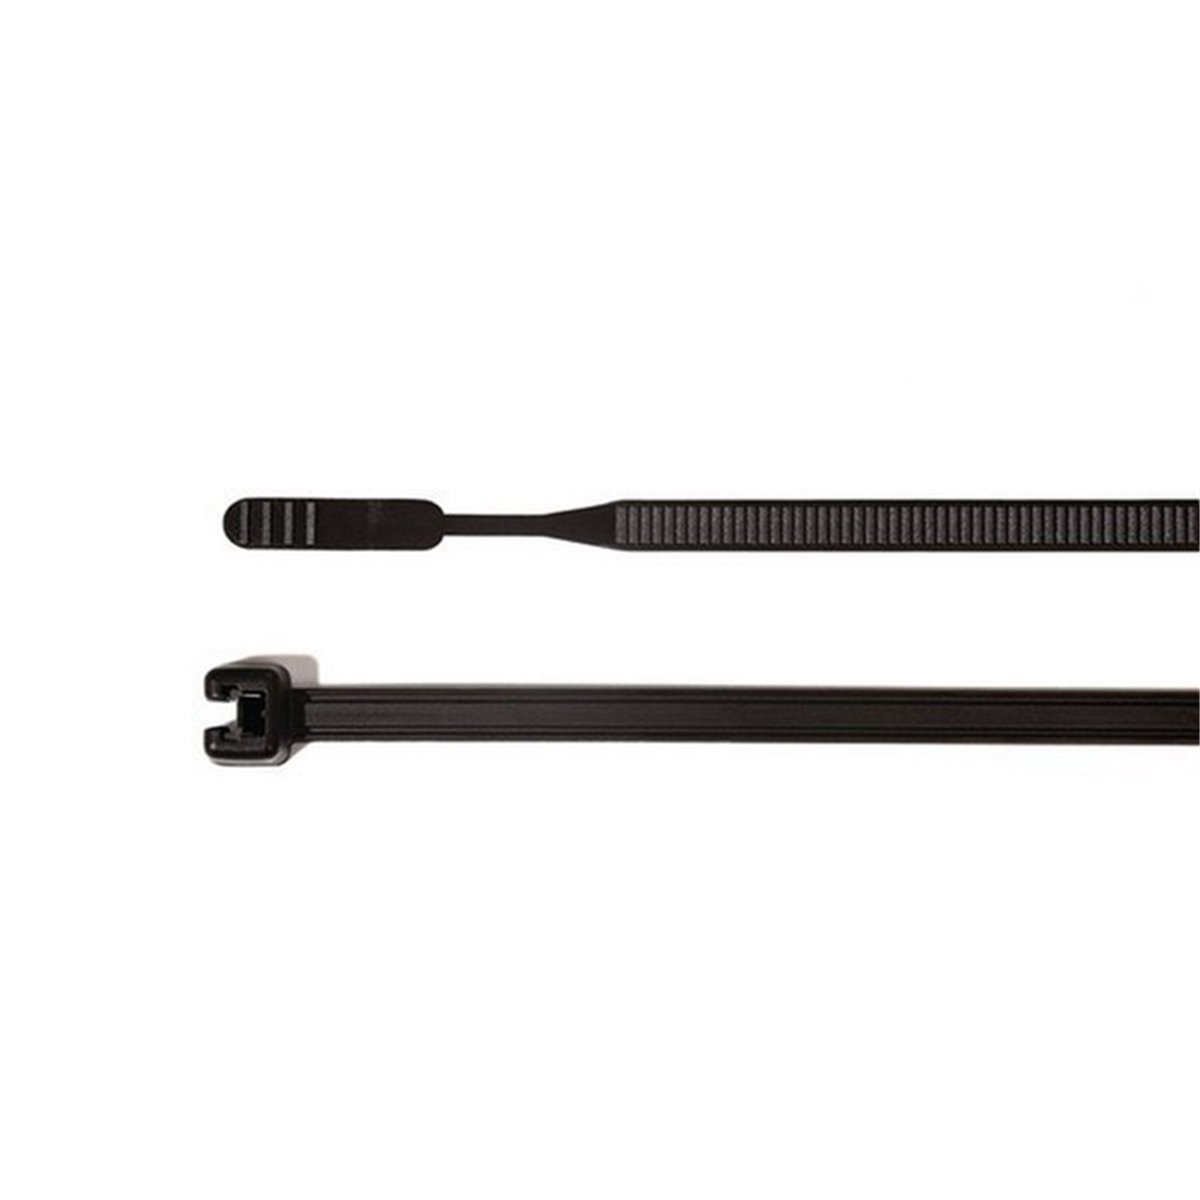 Cable tie 520x7,7mm Q120M-W-BK 100pcs. HellermannTyton